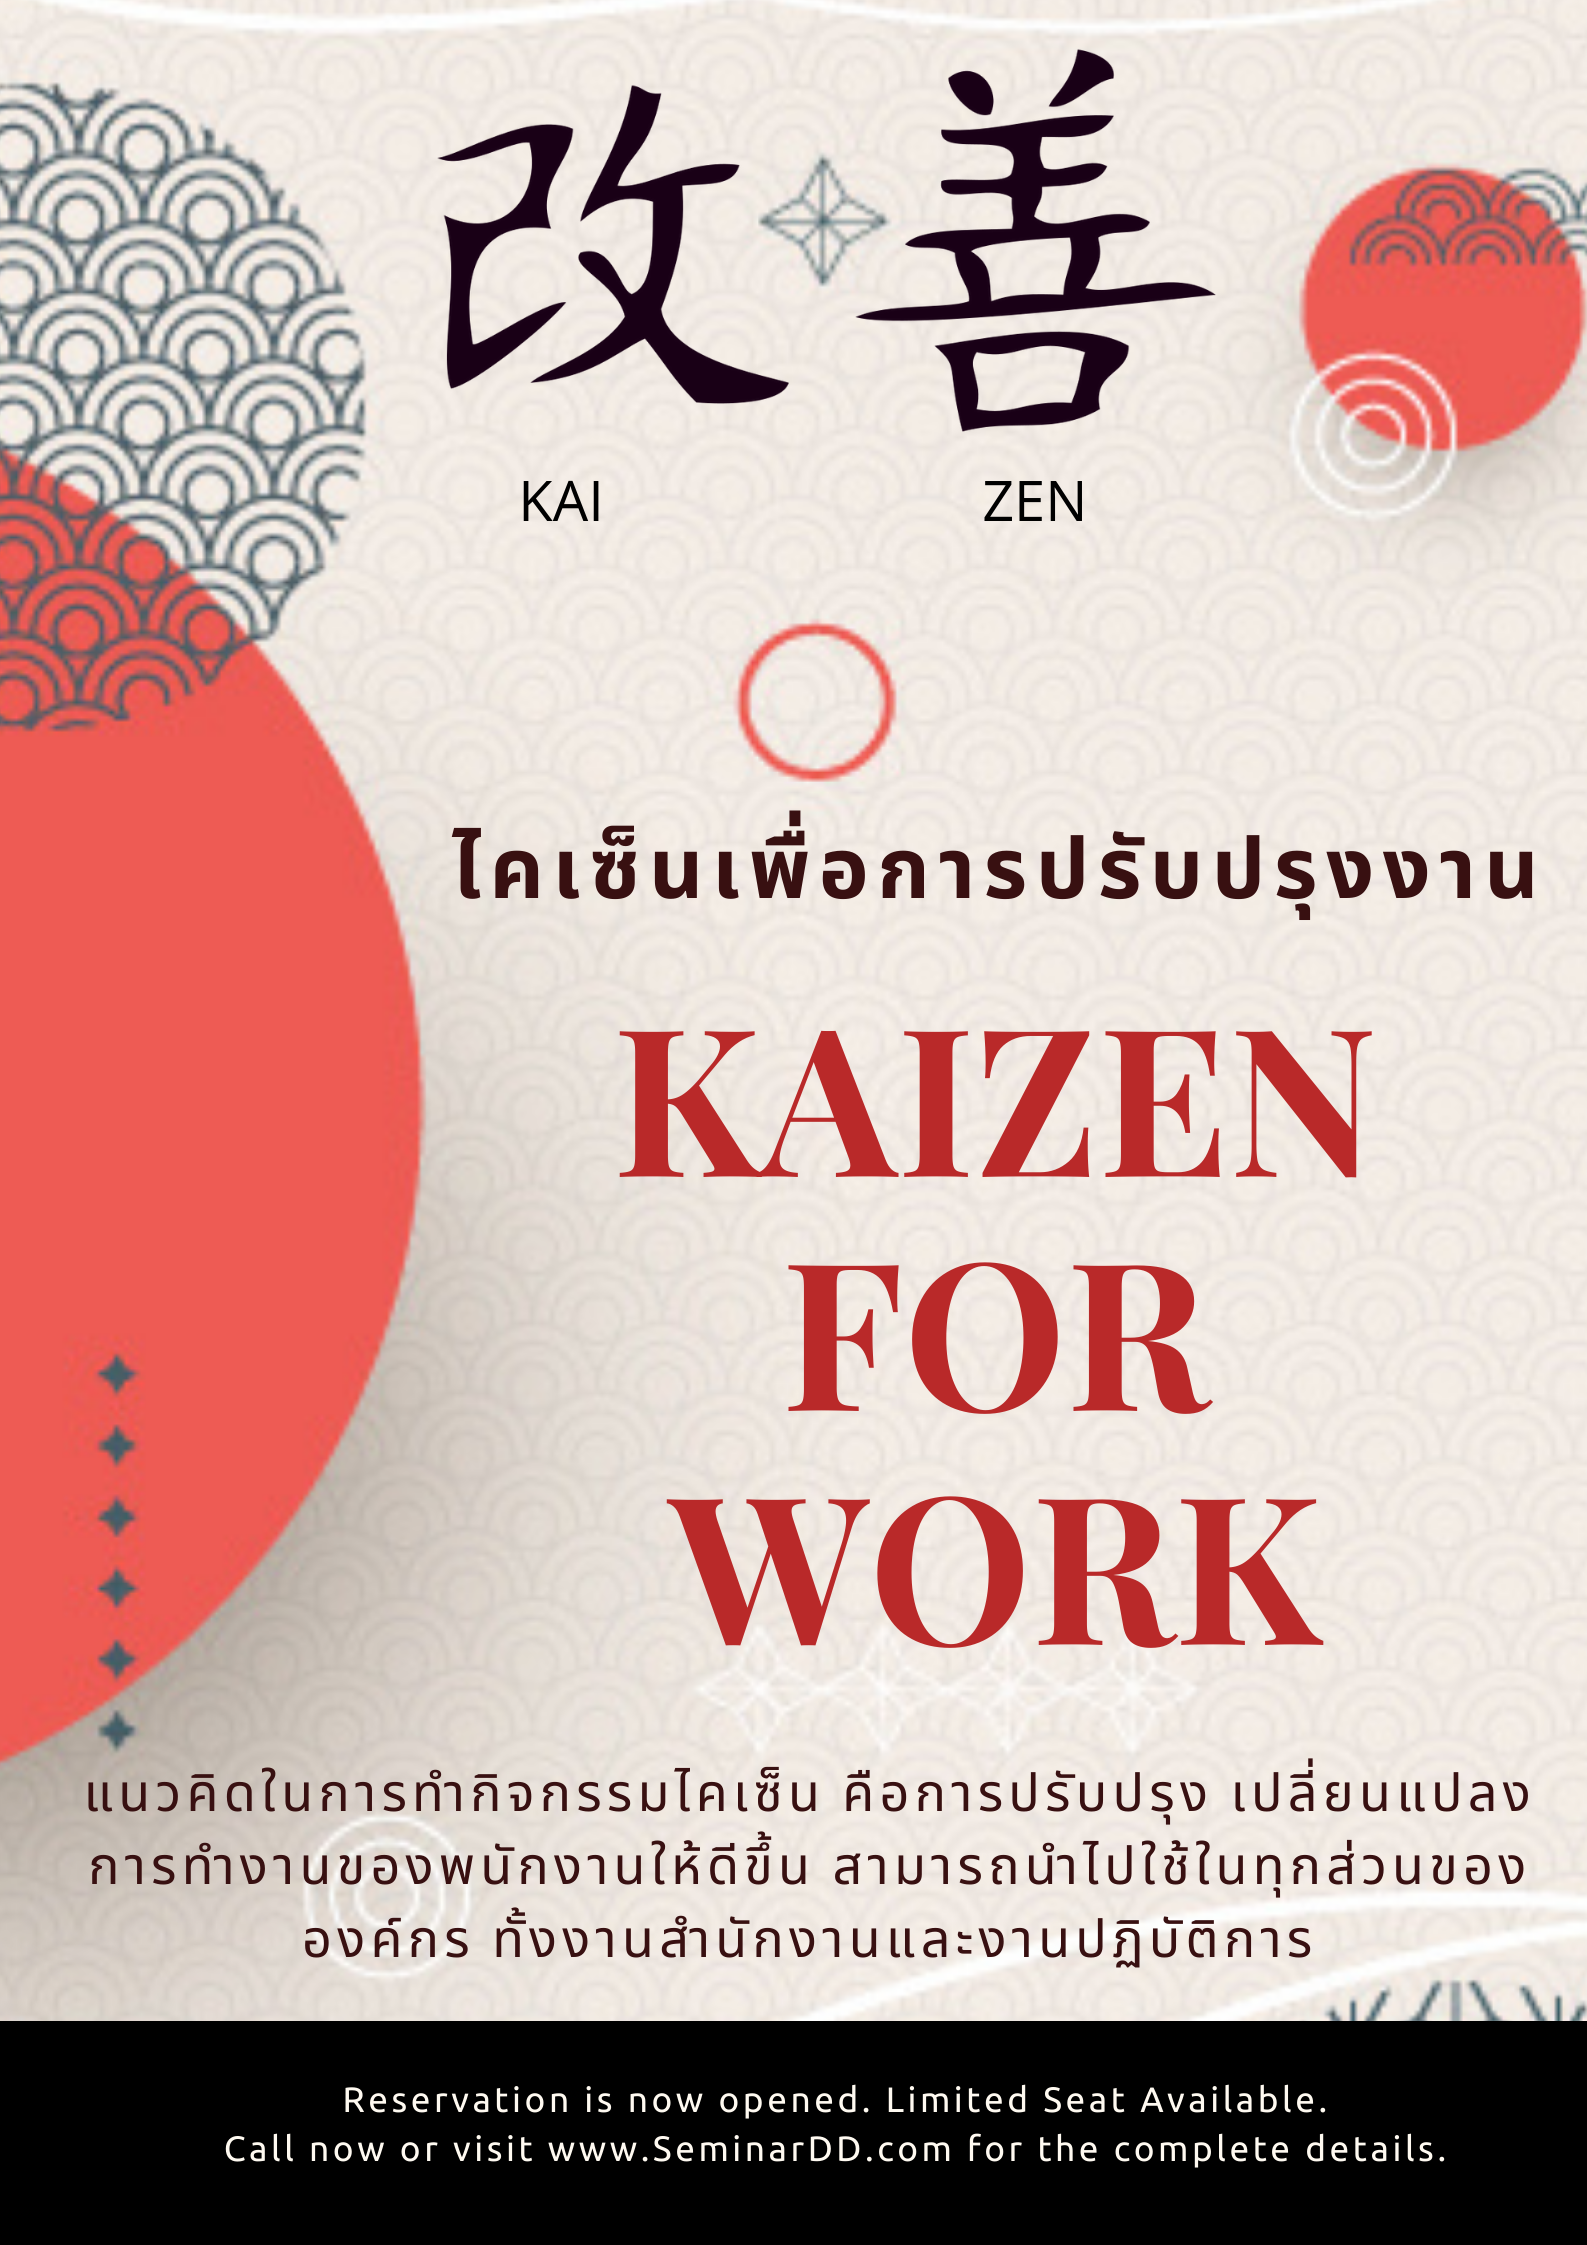 ไคเซ็นเพื่อการปรับปรุงงาน (Kaizen for Work Improvement)